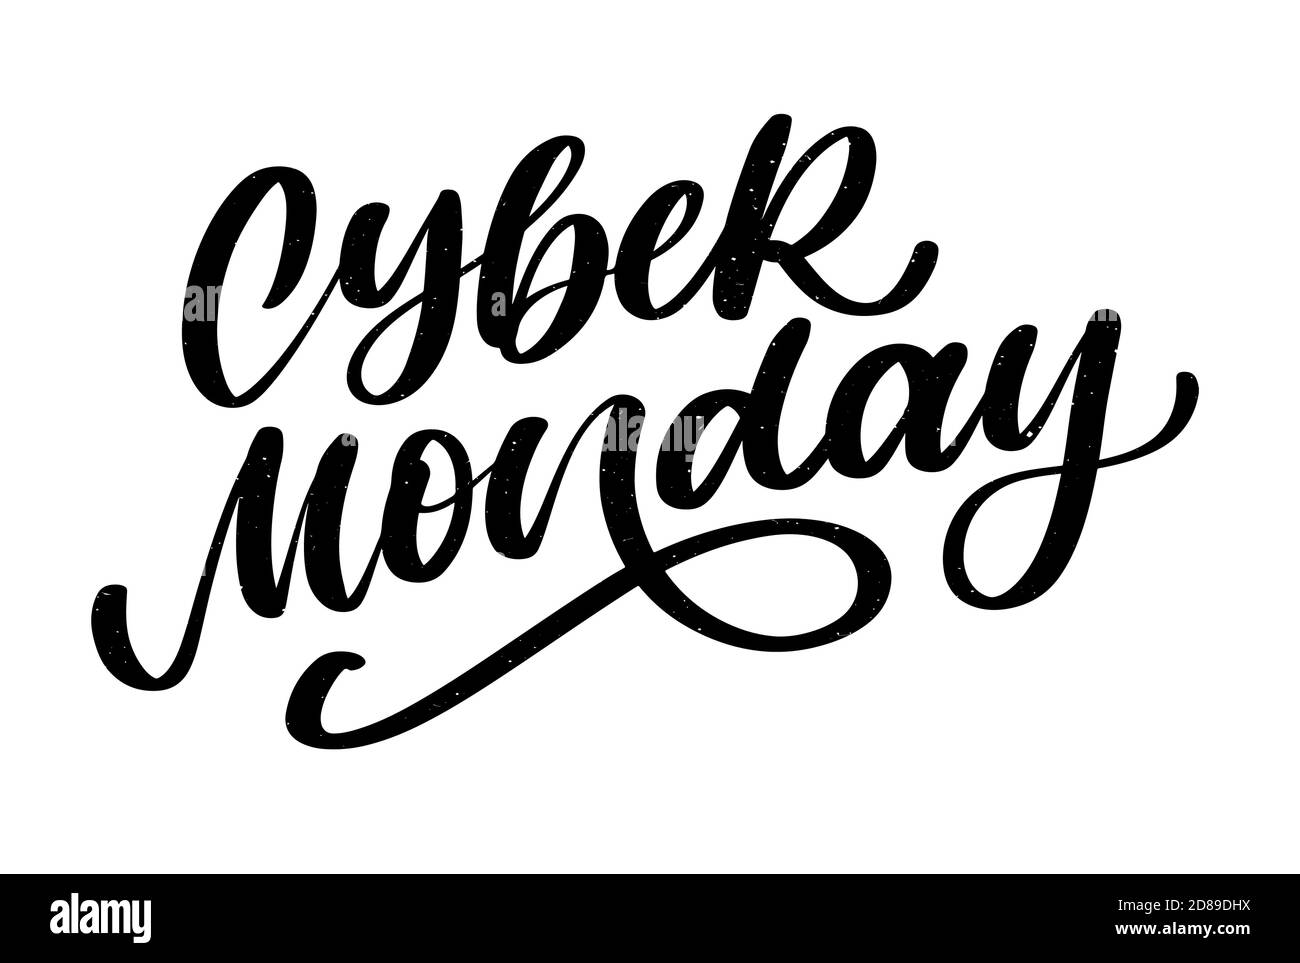 Cyber Monday Vector lettering calligraphie texte pinceau Illustration de Vecteur